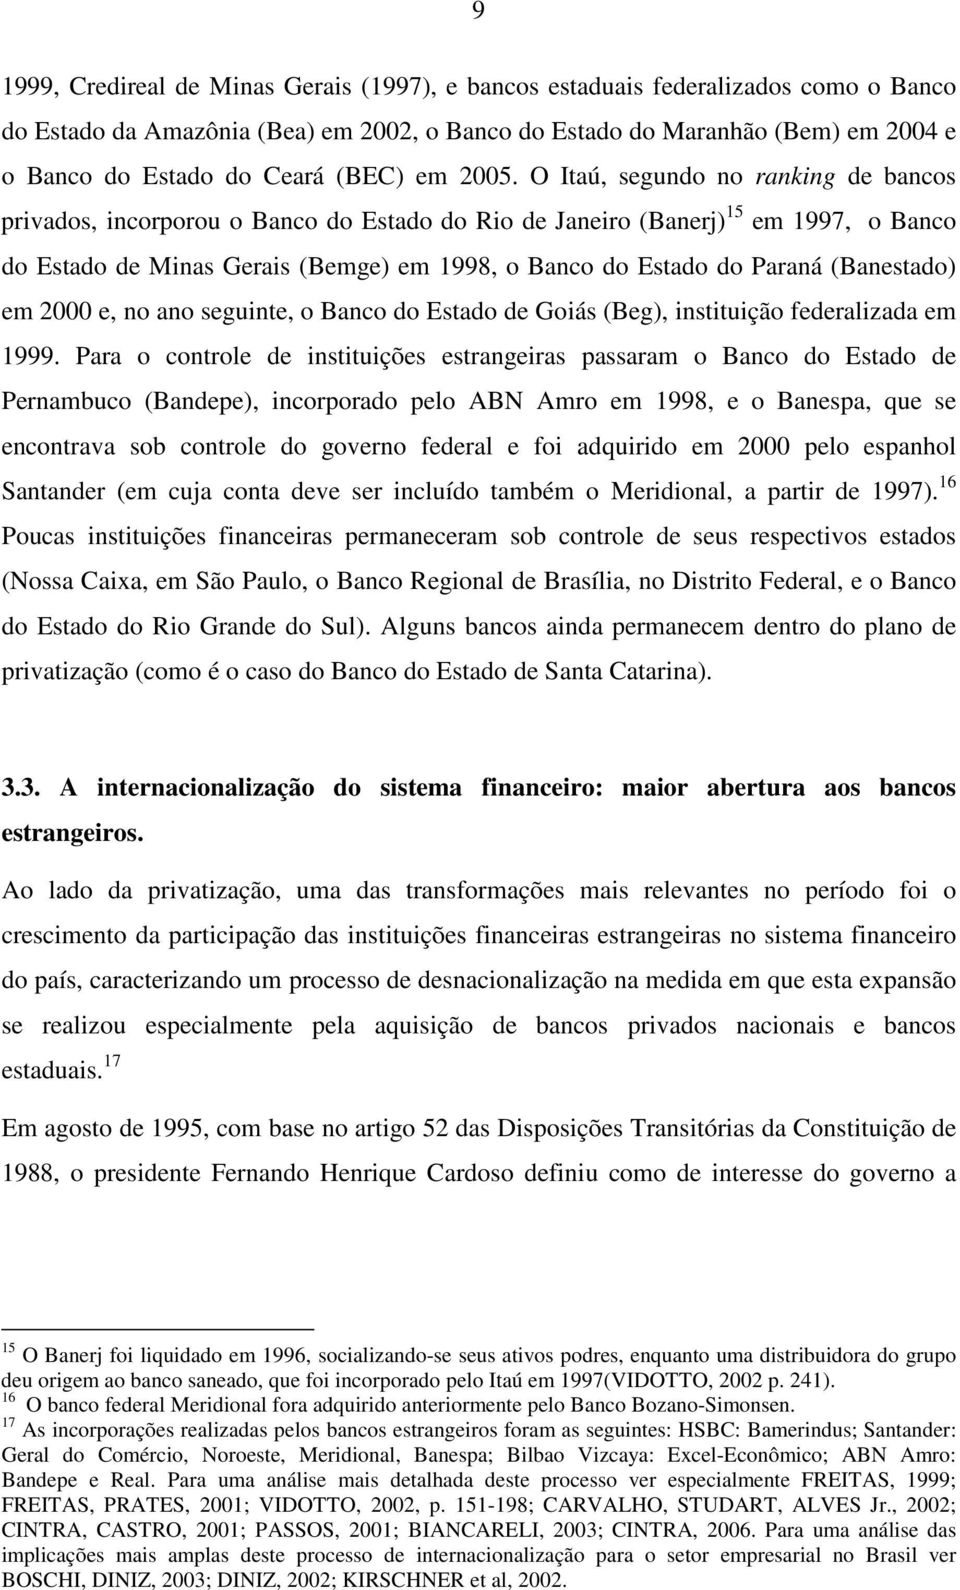 O Itaú, segundo no ranking de bancos privados, incorporou o Banco do Estado do Rio de Janeiro (Banerj) 15 em 1997, o Banco do Estado de Minas Gerais (Bemge) em 1998, o Banco do Estado do Paraná